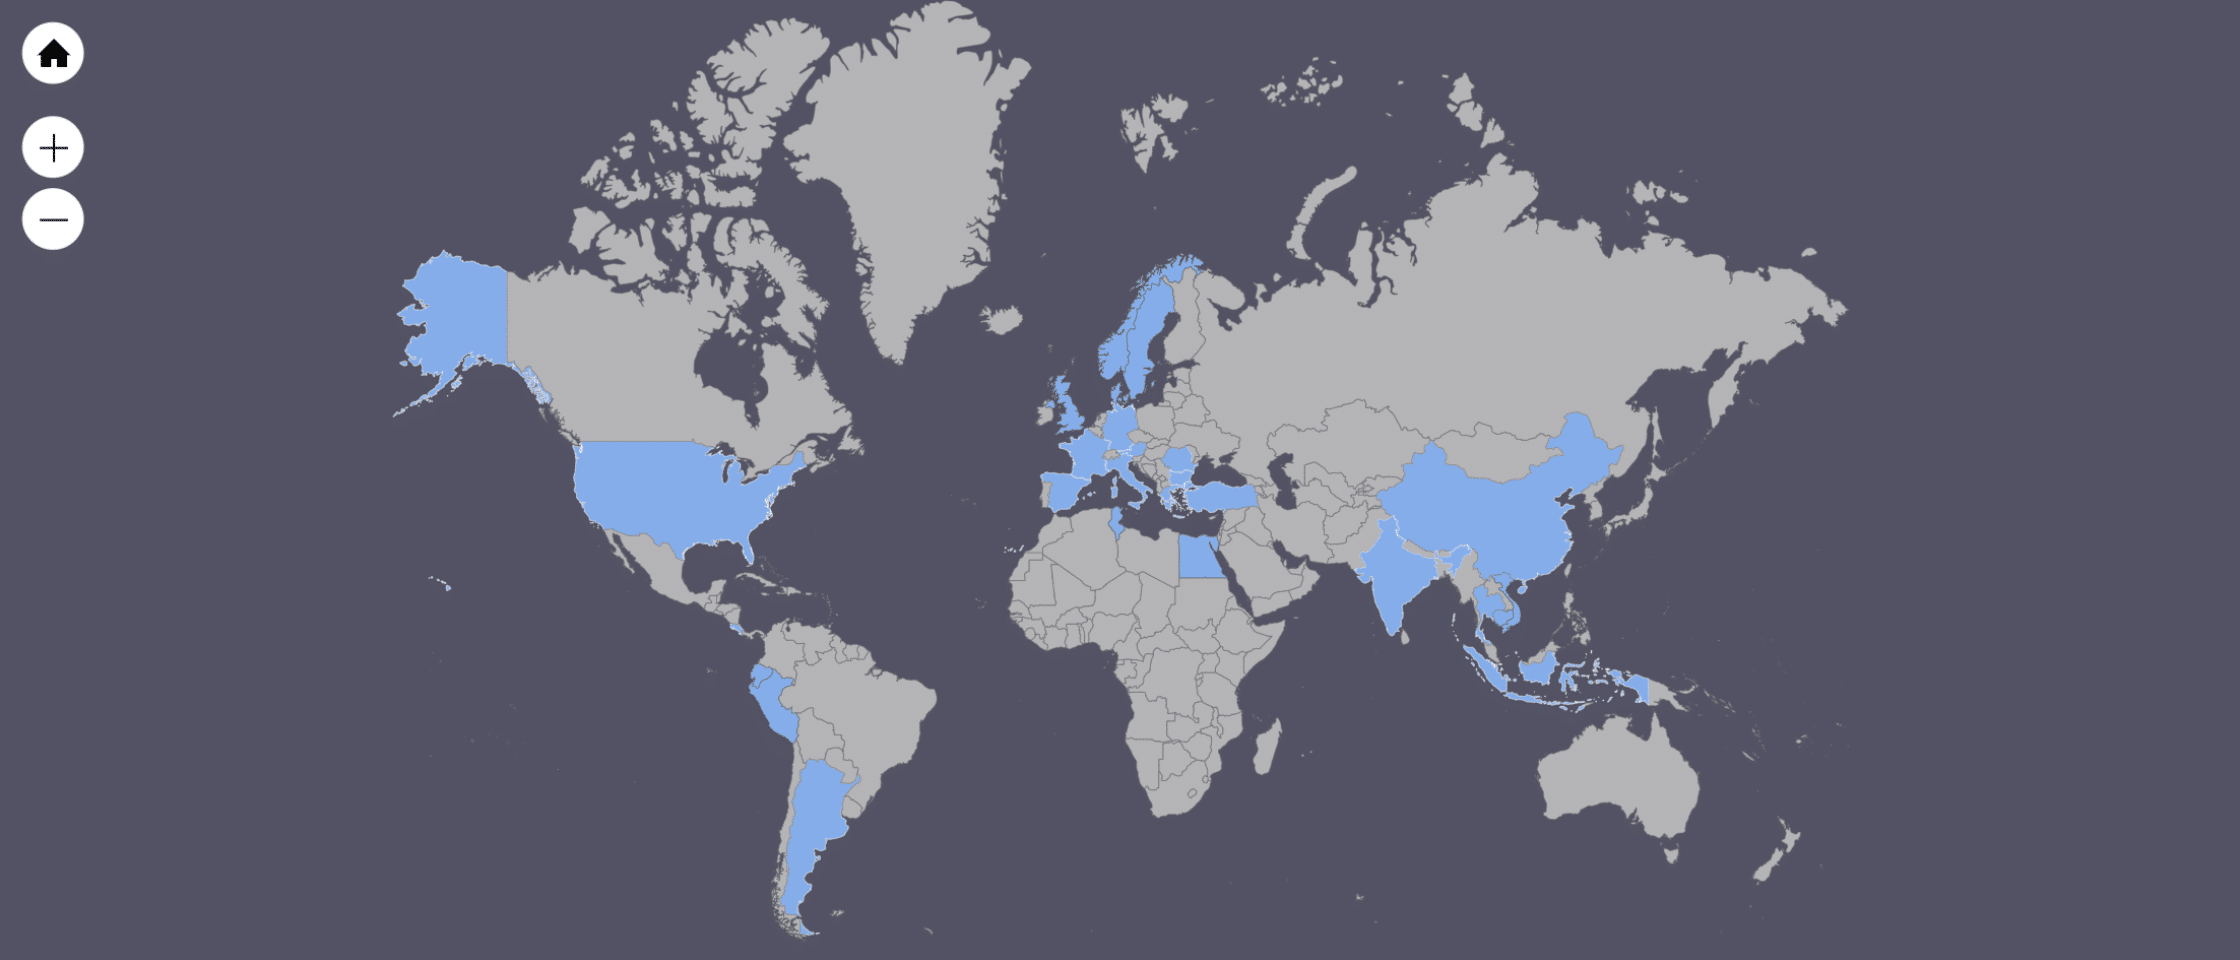 verdens kort med blåt markerede enkelte lande